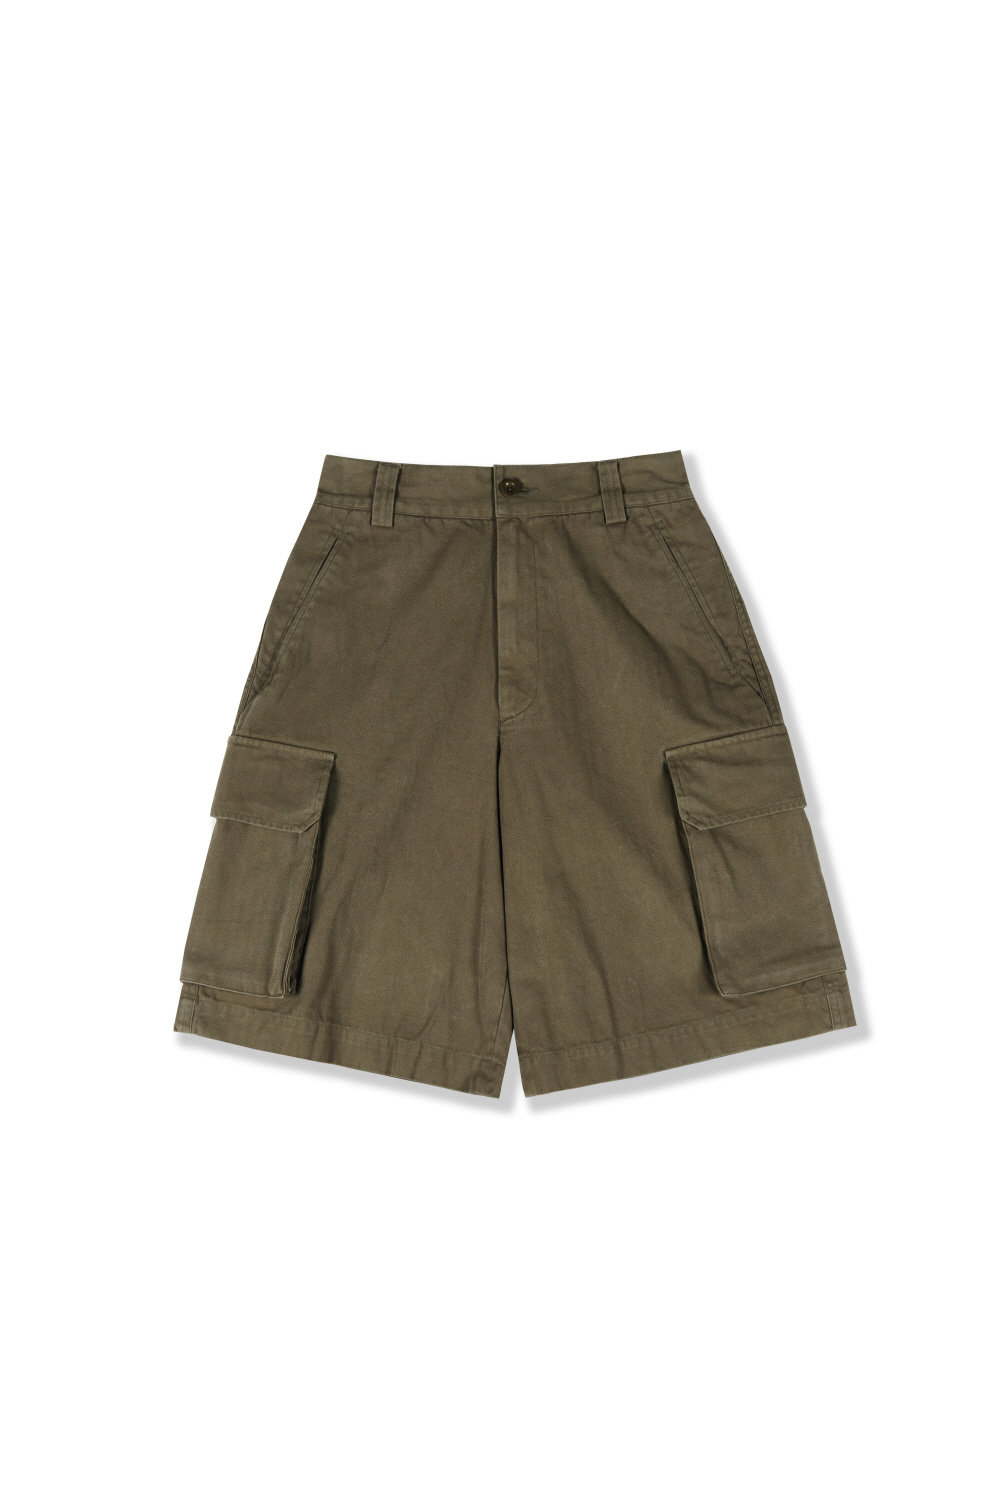 [4/30 (화) 발매예정] M-47 shorts(HBT)_olive